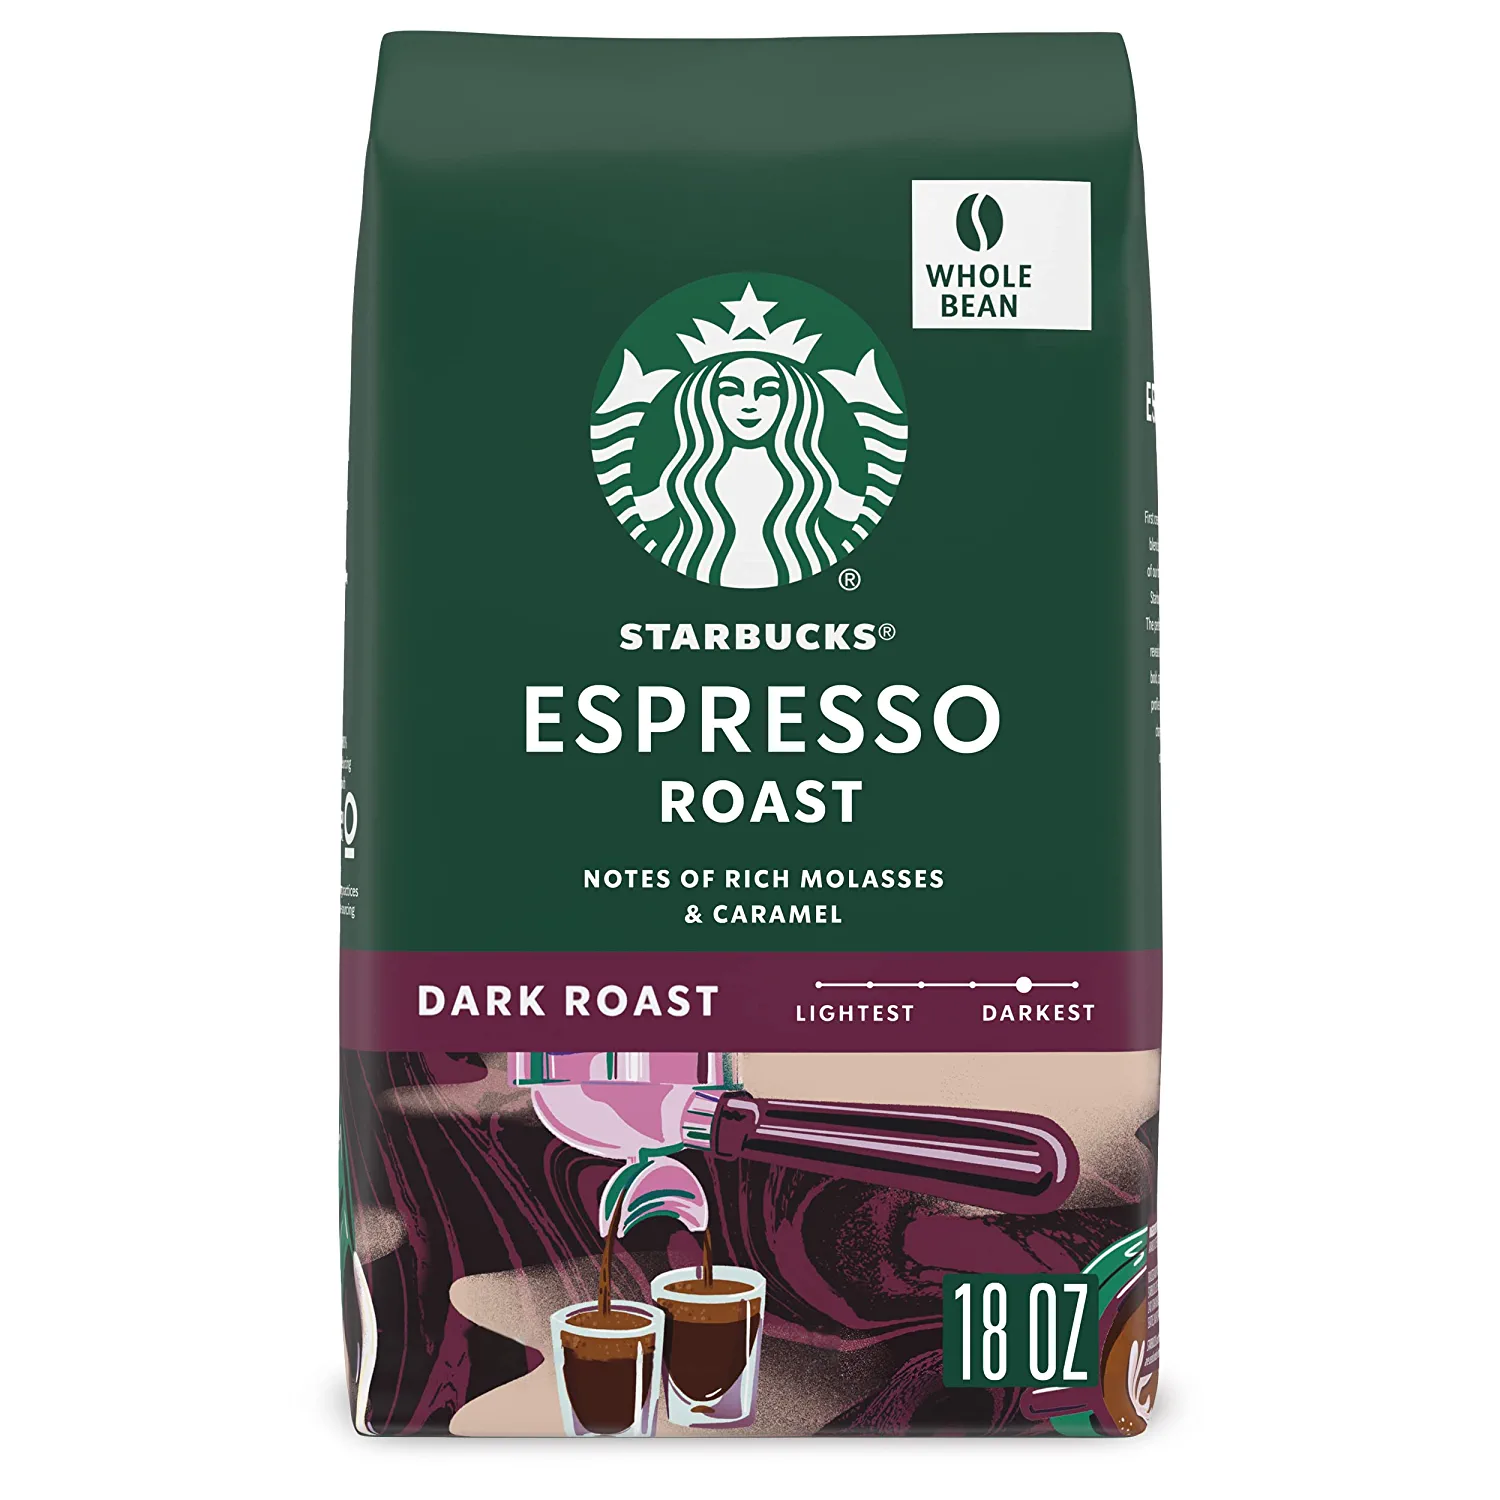 a bag of espresso dark roast.